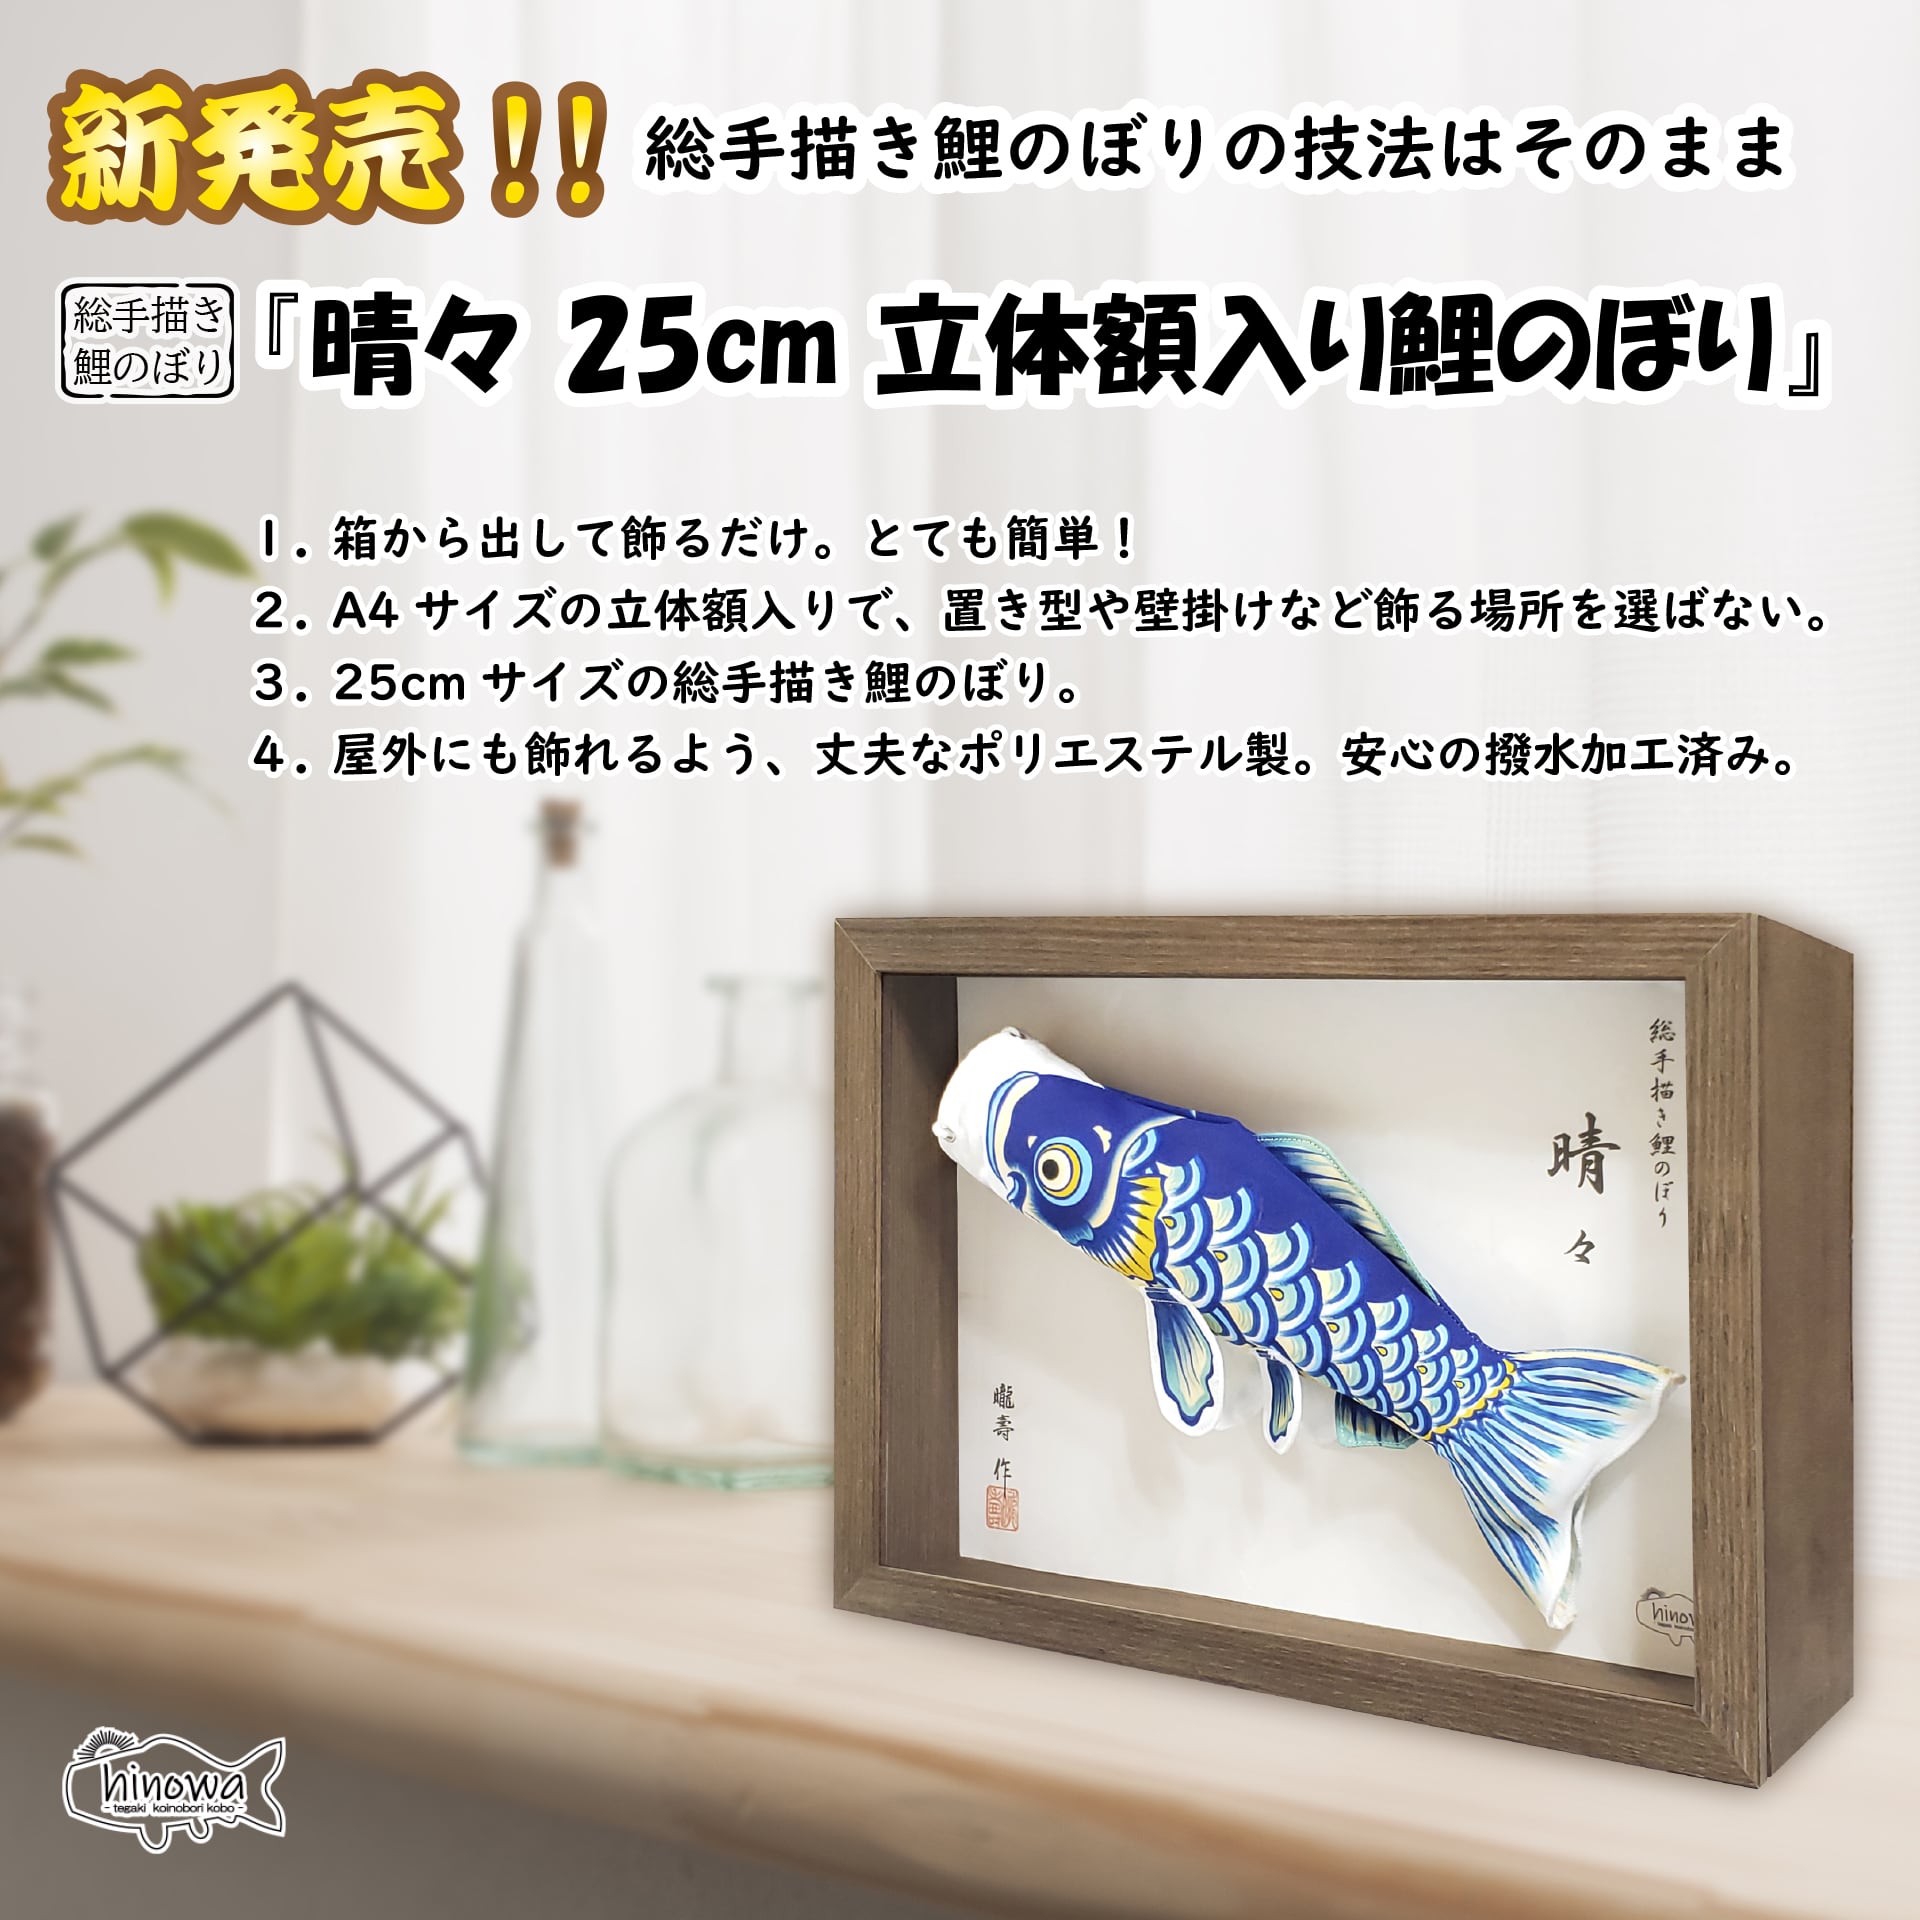 晴々』「25cm 立体額入り鯉のぼり」総手描き鯉のぼり | 手描き鯉のぼり